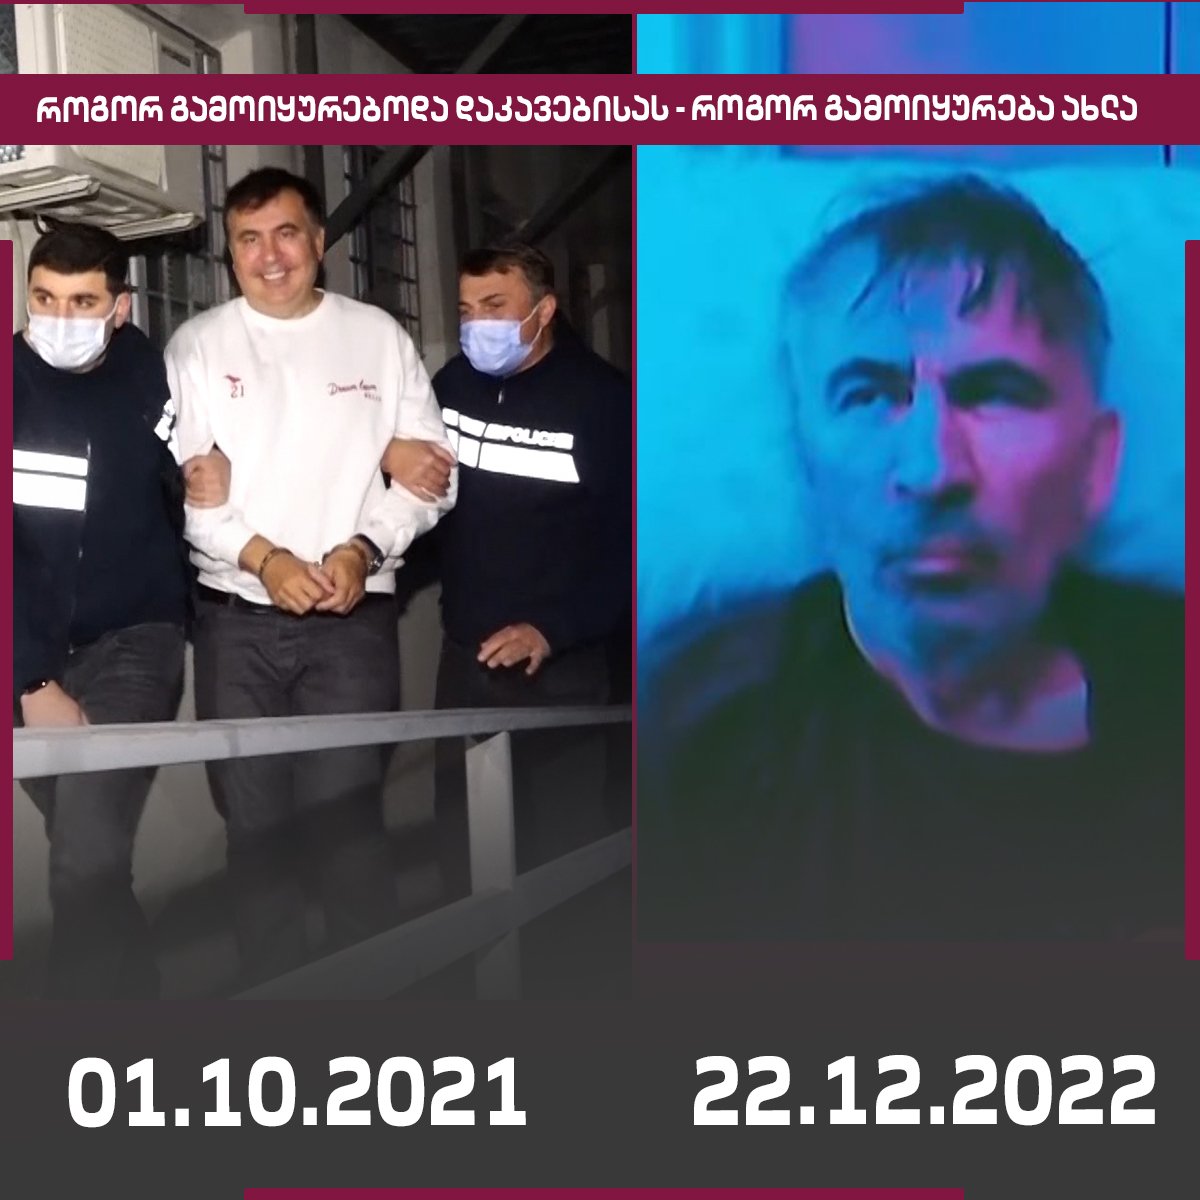 Саакашвили в день ареста и в нынешнее время. Кадр: Оппозиционная телекомпания «Мтавари»